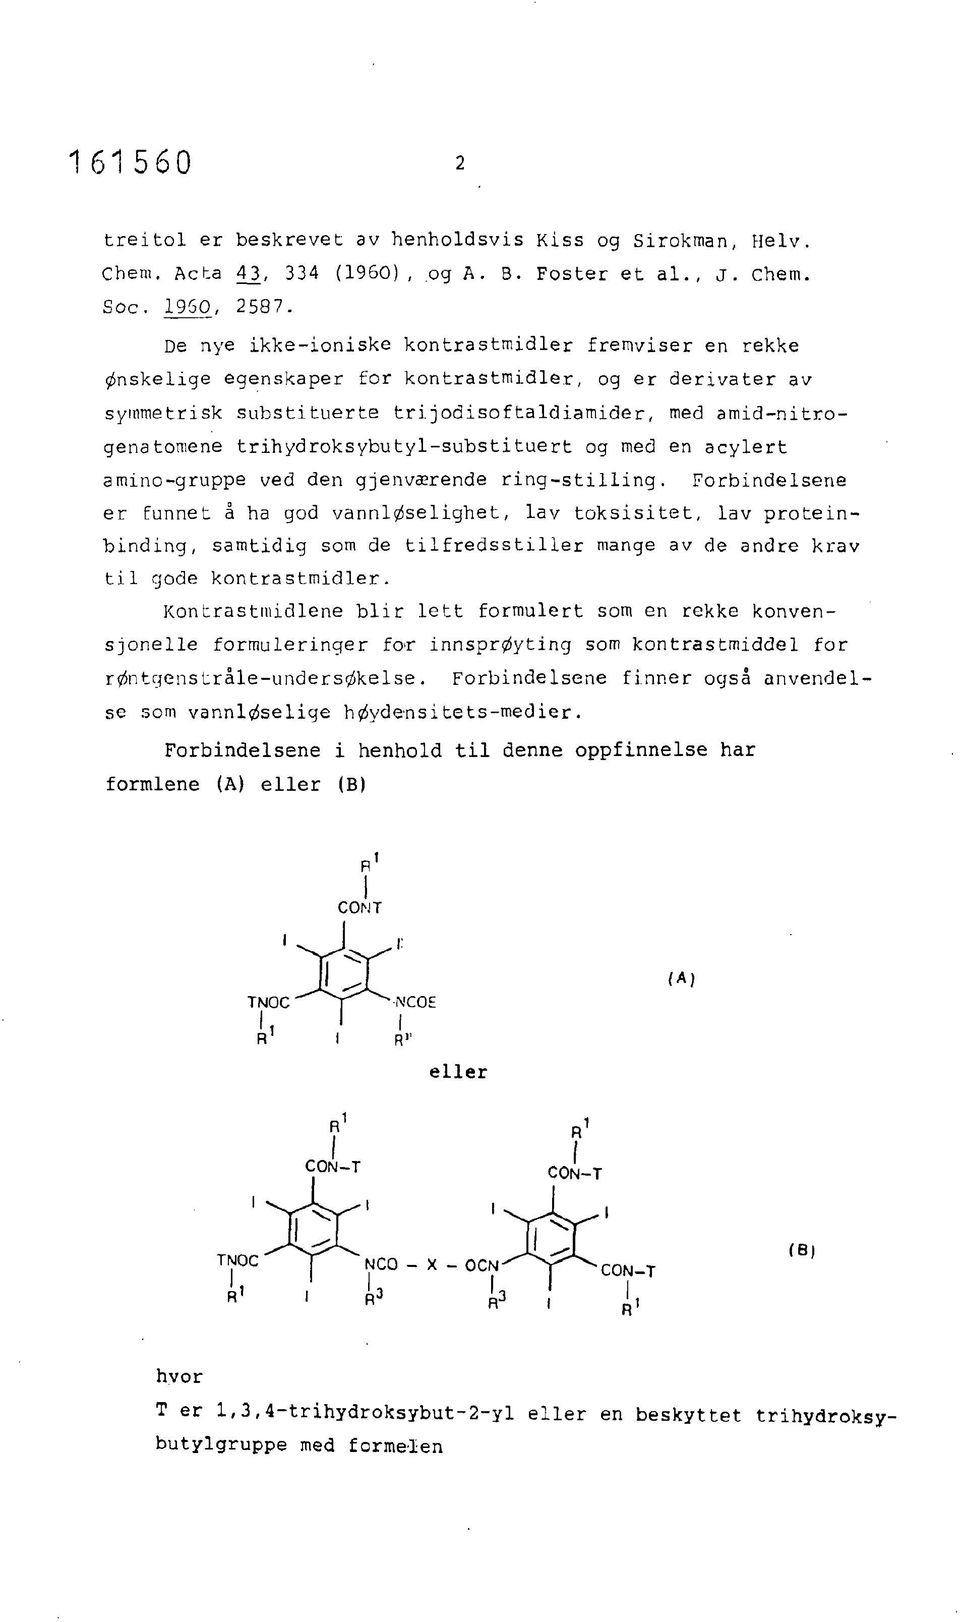 jodisoftaldiamider, med amid-nitrogenatoniene trihydroksybutyl-substituert og med en acylert amino-gruppe ved den gjenværende ring-stilling.